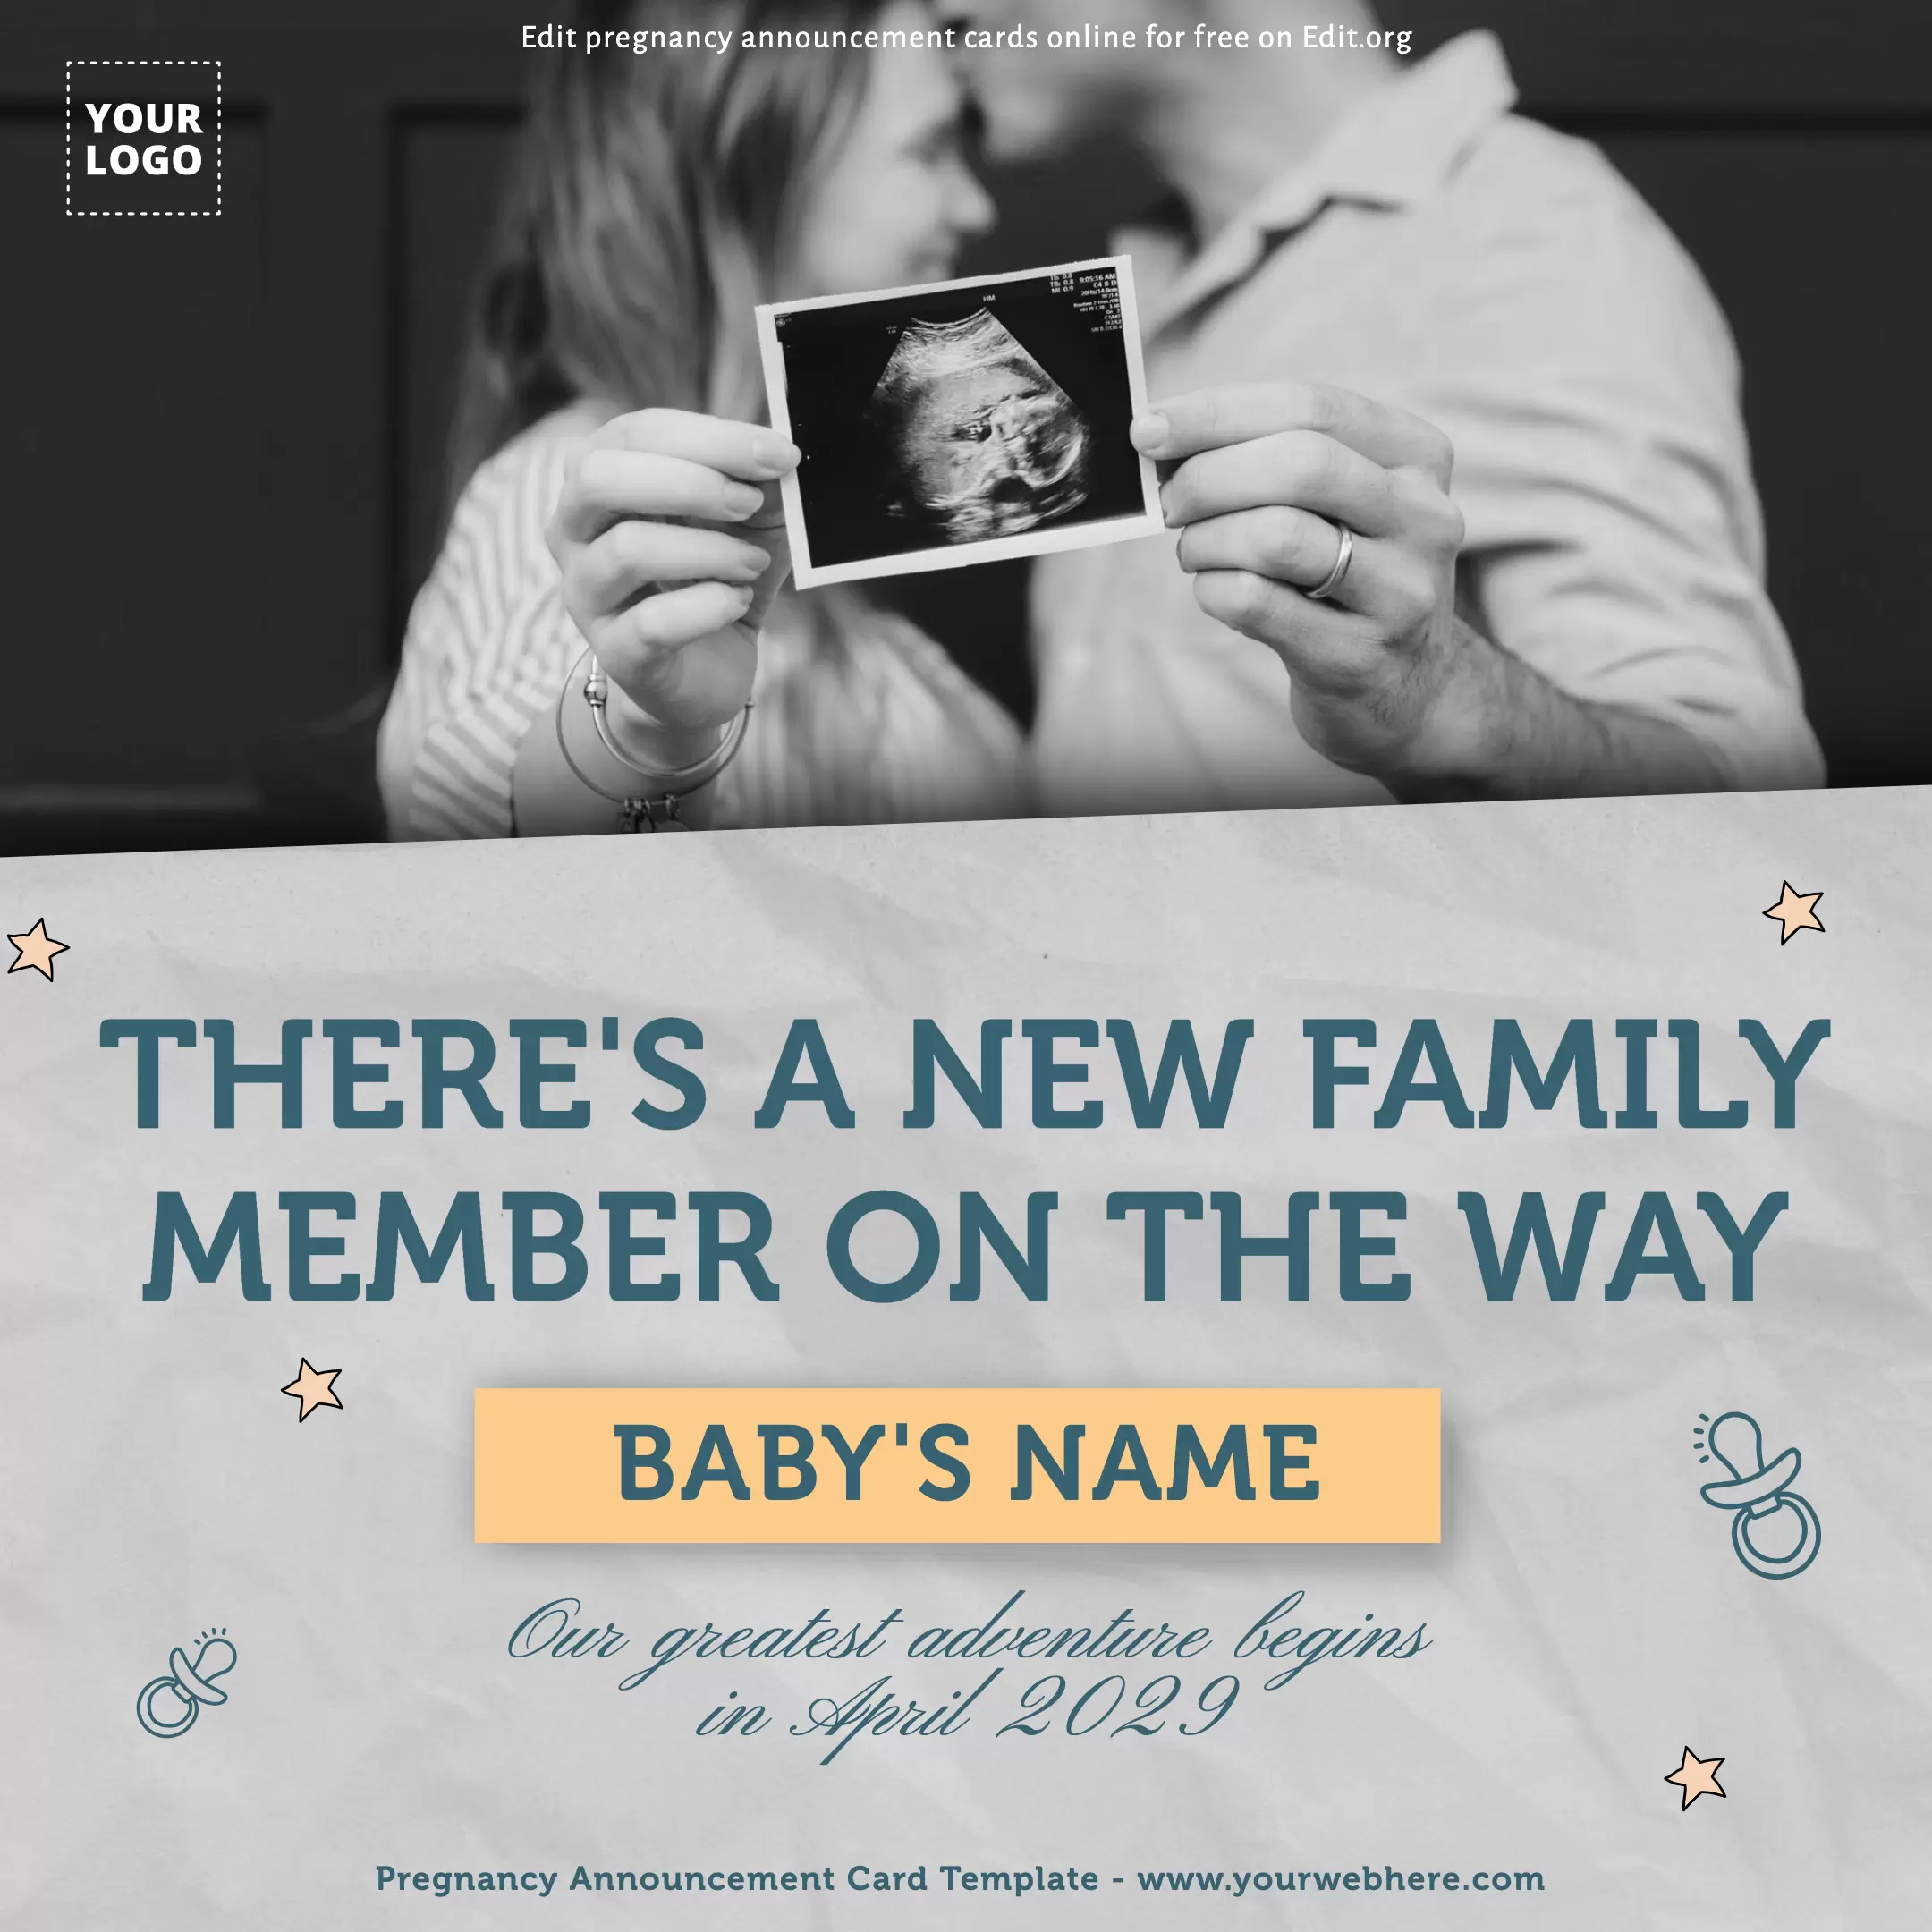 Design Pregnancy Announcement card templates online